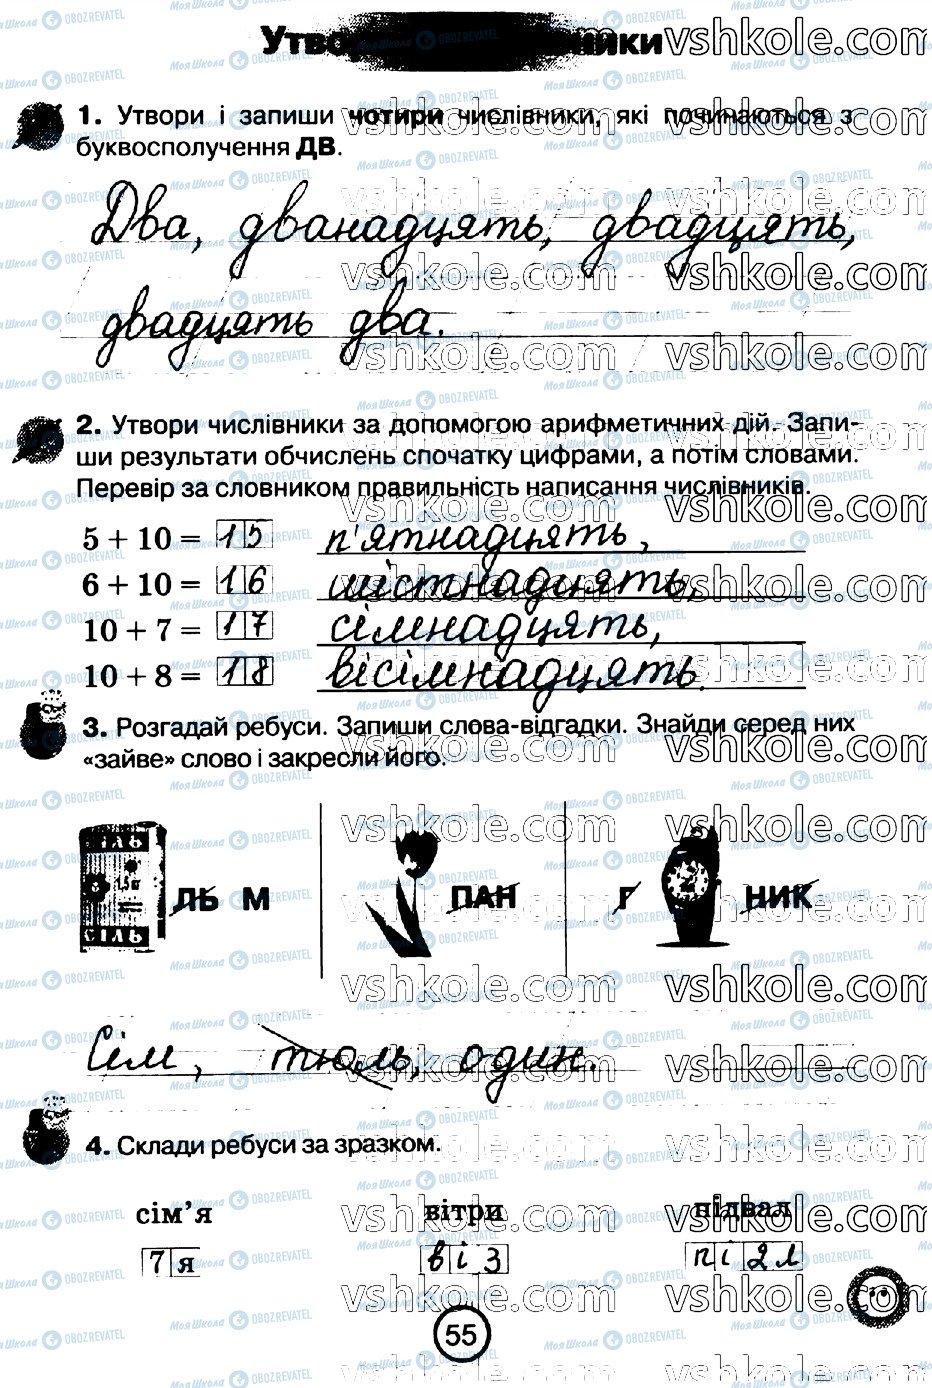 ГДЗ Укр мова 2 класс страница стр55